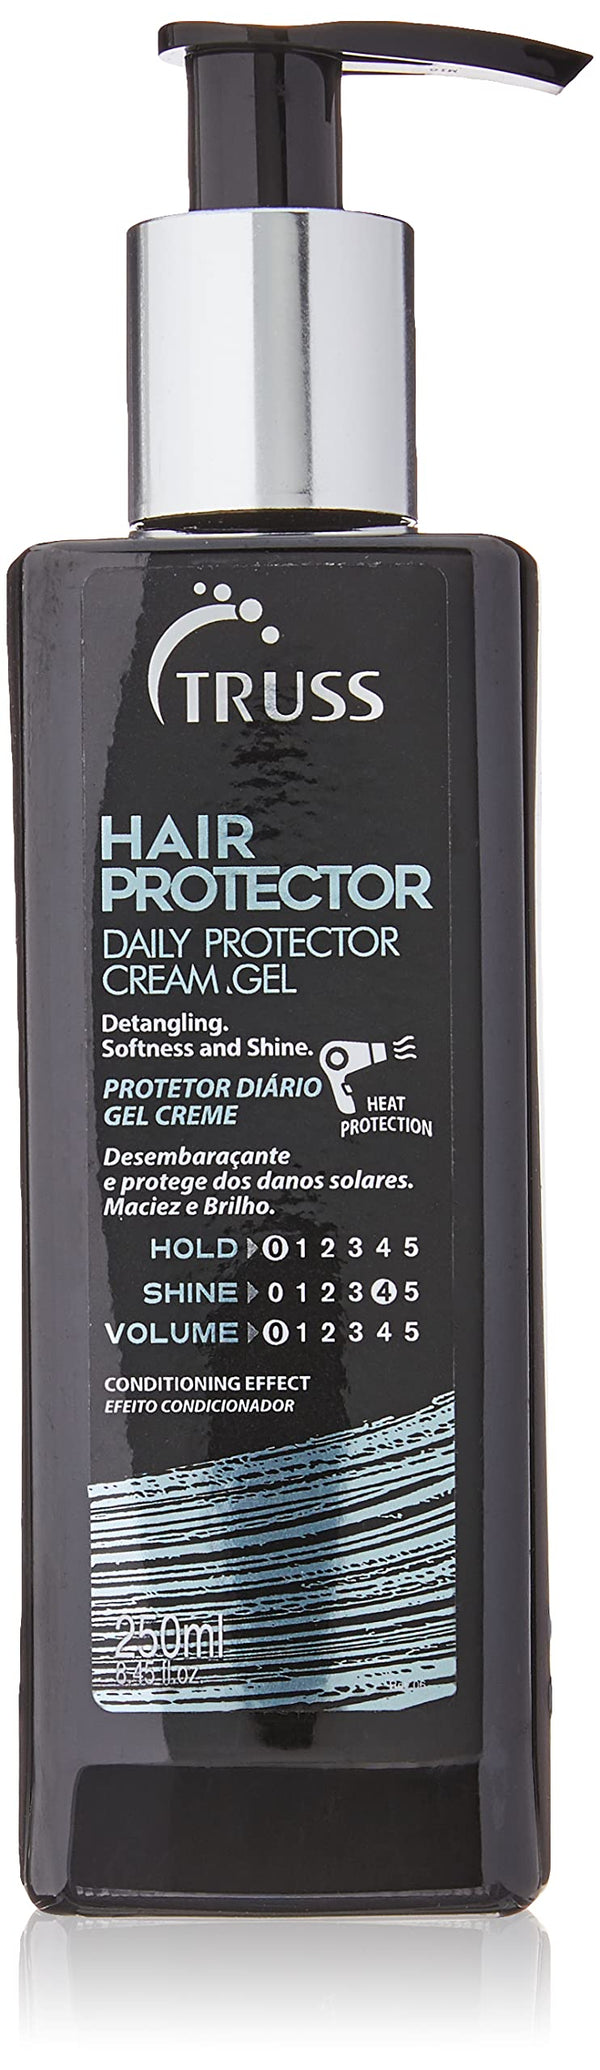 Hair Protector